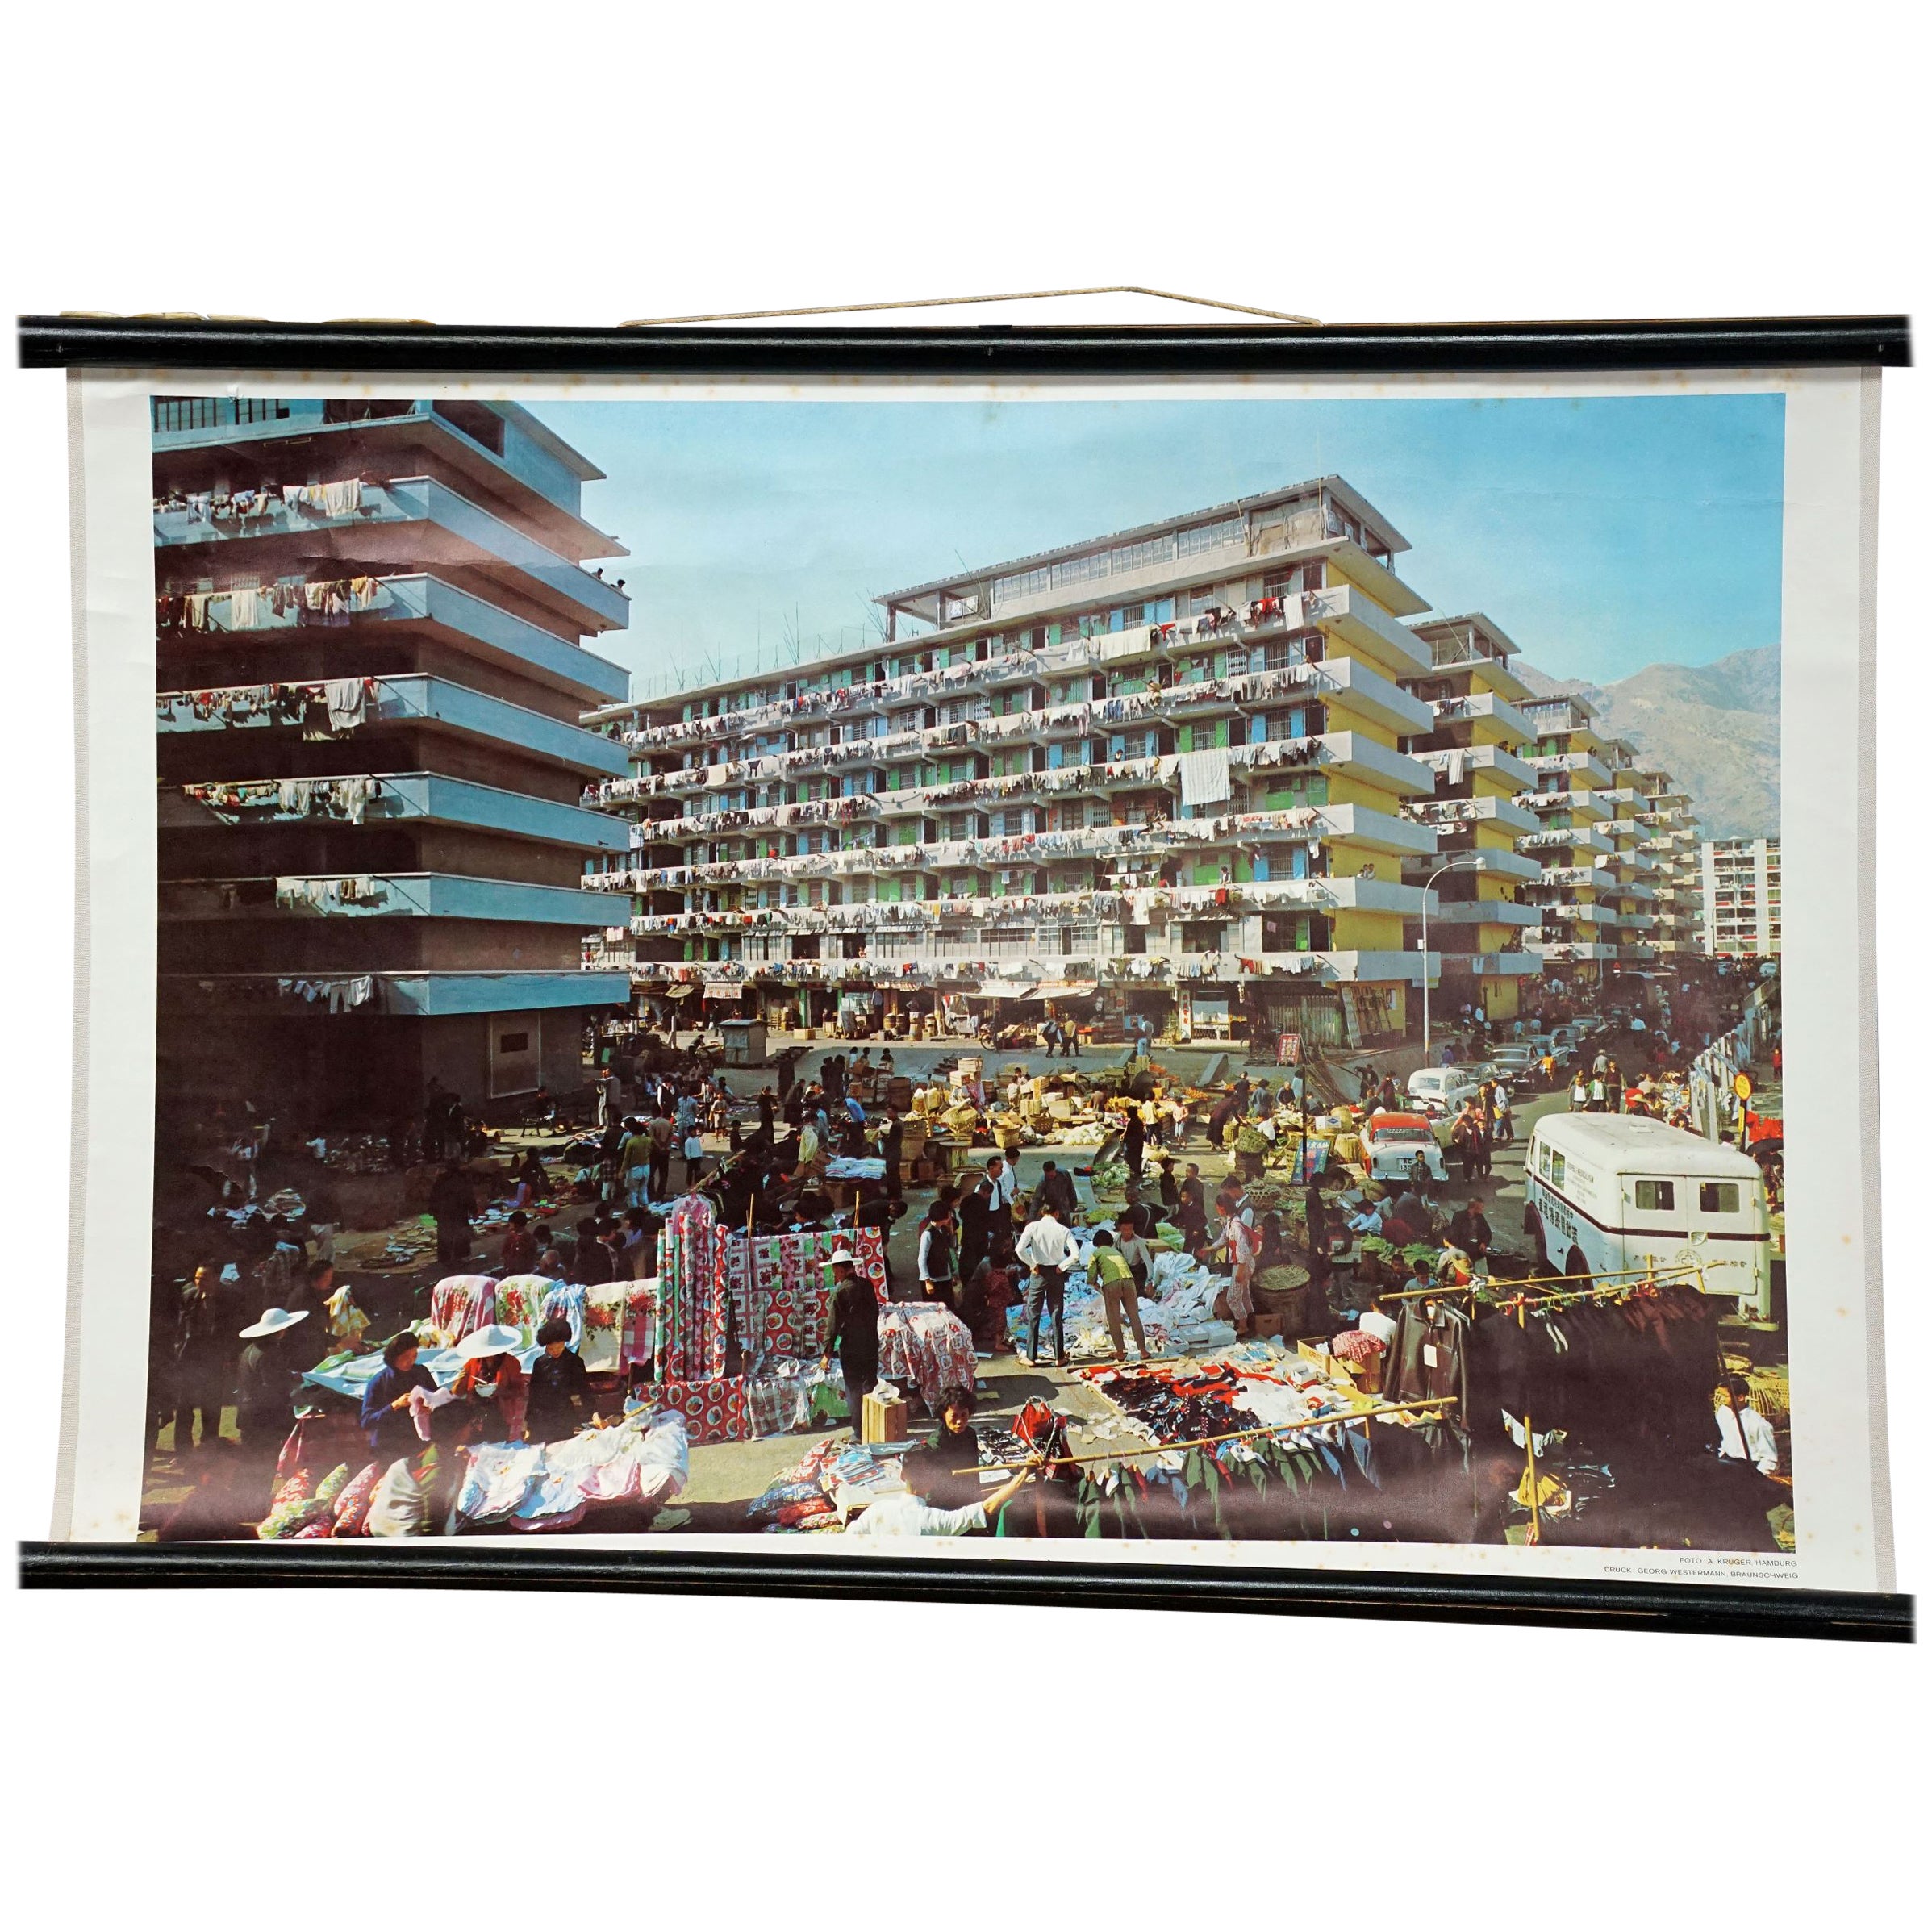 Rollbare Wandtafel, Vintage, Fotoplakat, Living in Hong Kong, 1970er Jahre